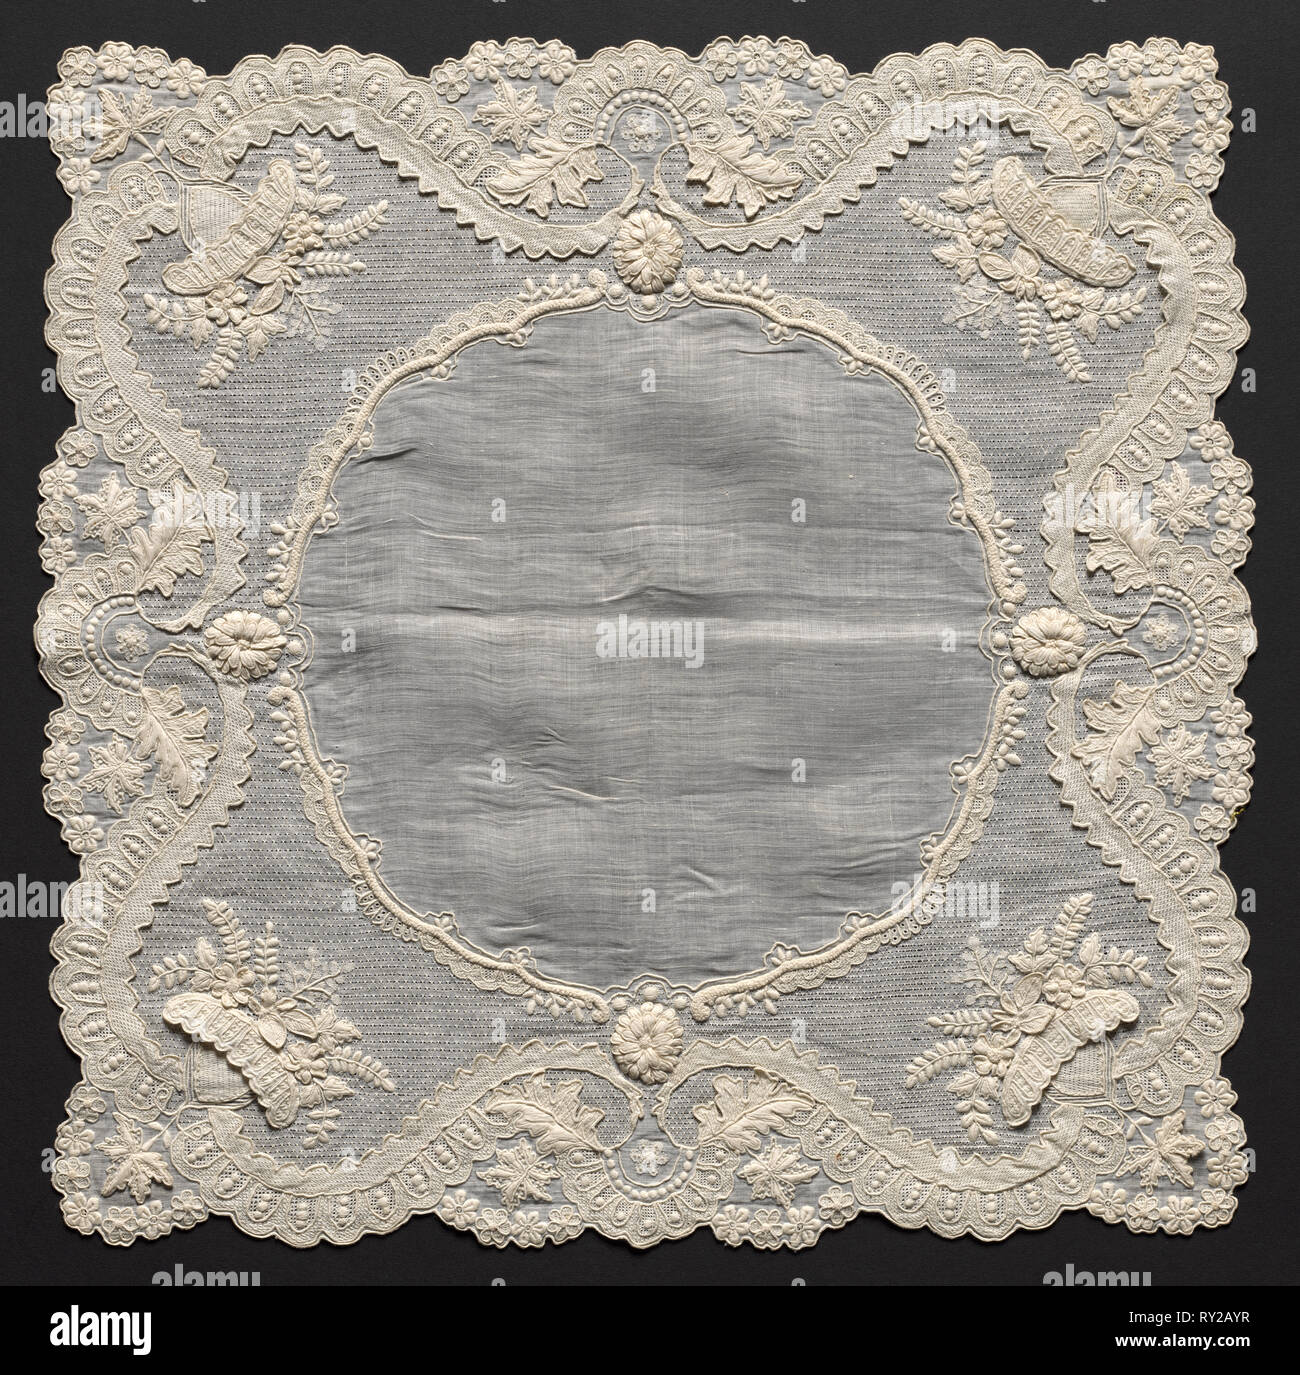 Fazzoletto ricamato, 1800s. L'Italia, xix secolo. Ricamo: biancheria;  complessivo: 39,4 x 40 cm (15 1/2 x 15 3/4 in Foto stock - Alamy